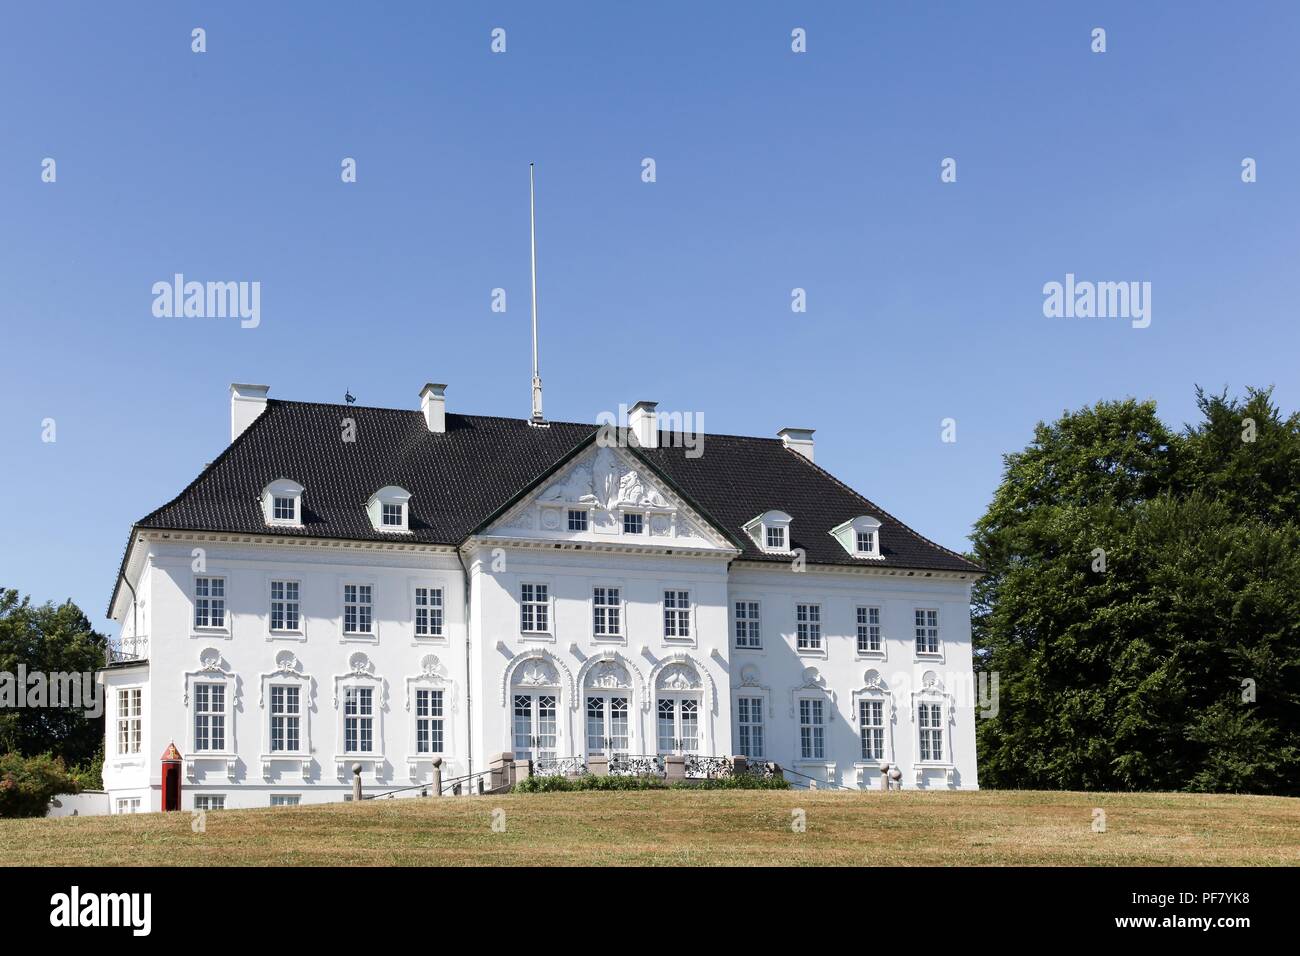 Marselisborg Palace est une résidence royale de la famille royale danoise à Aarhus. Il a été la résidence d'été de la Reine Margrethe II depuis 1967 Banque D'Images